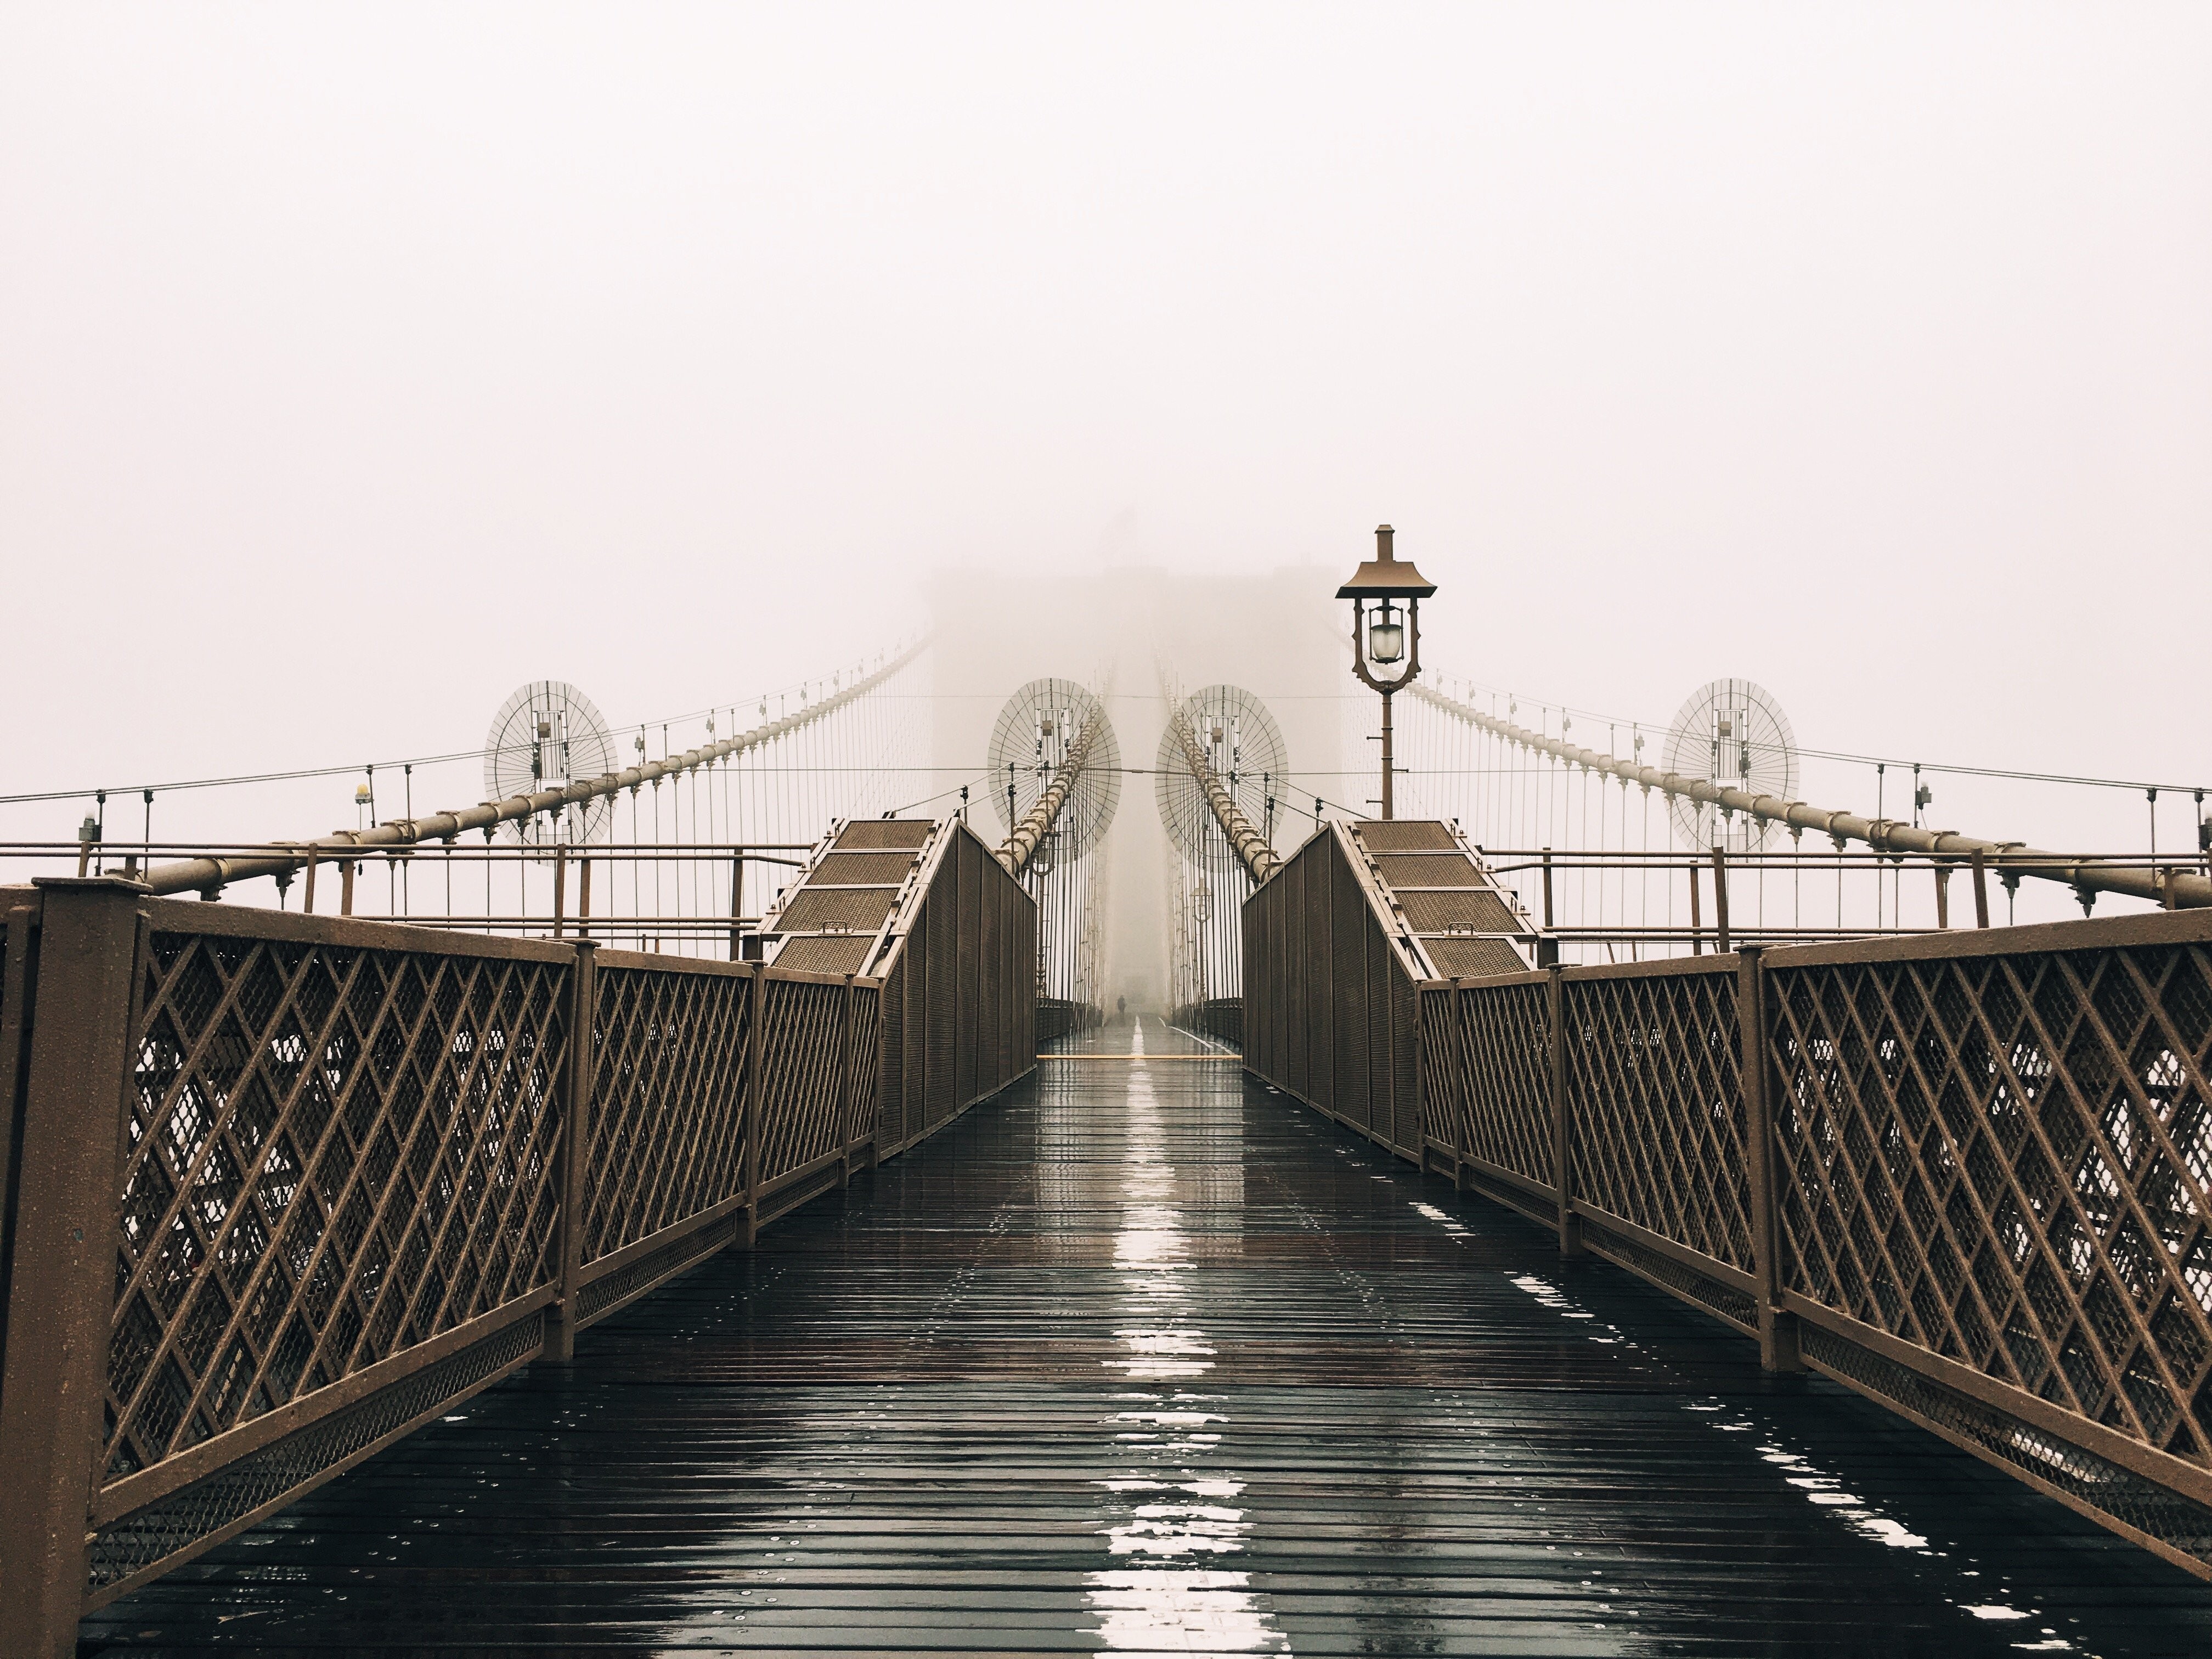 Foto Jembatan Basah Tertutup Kabut